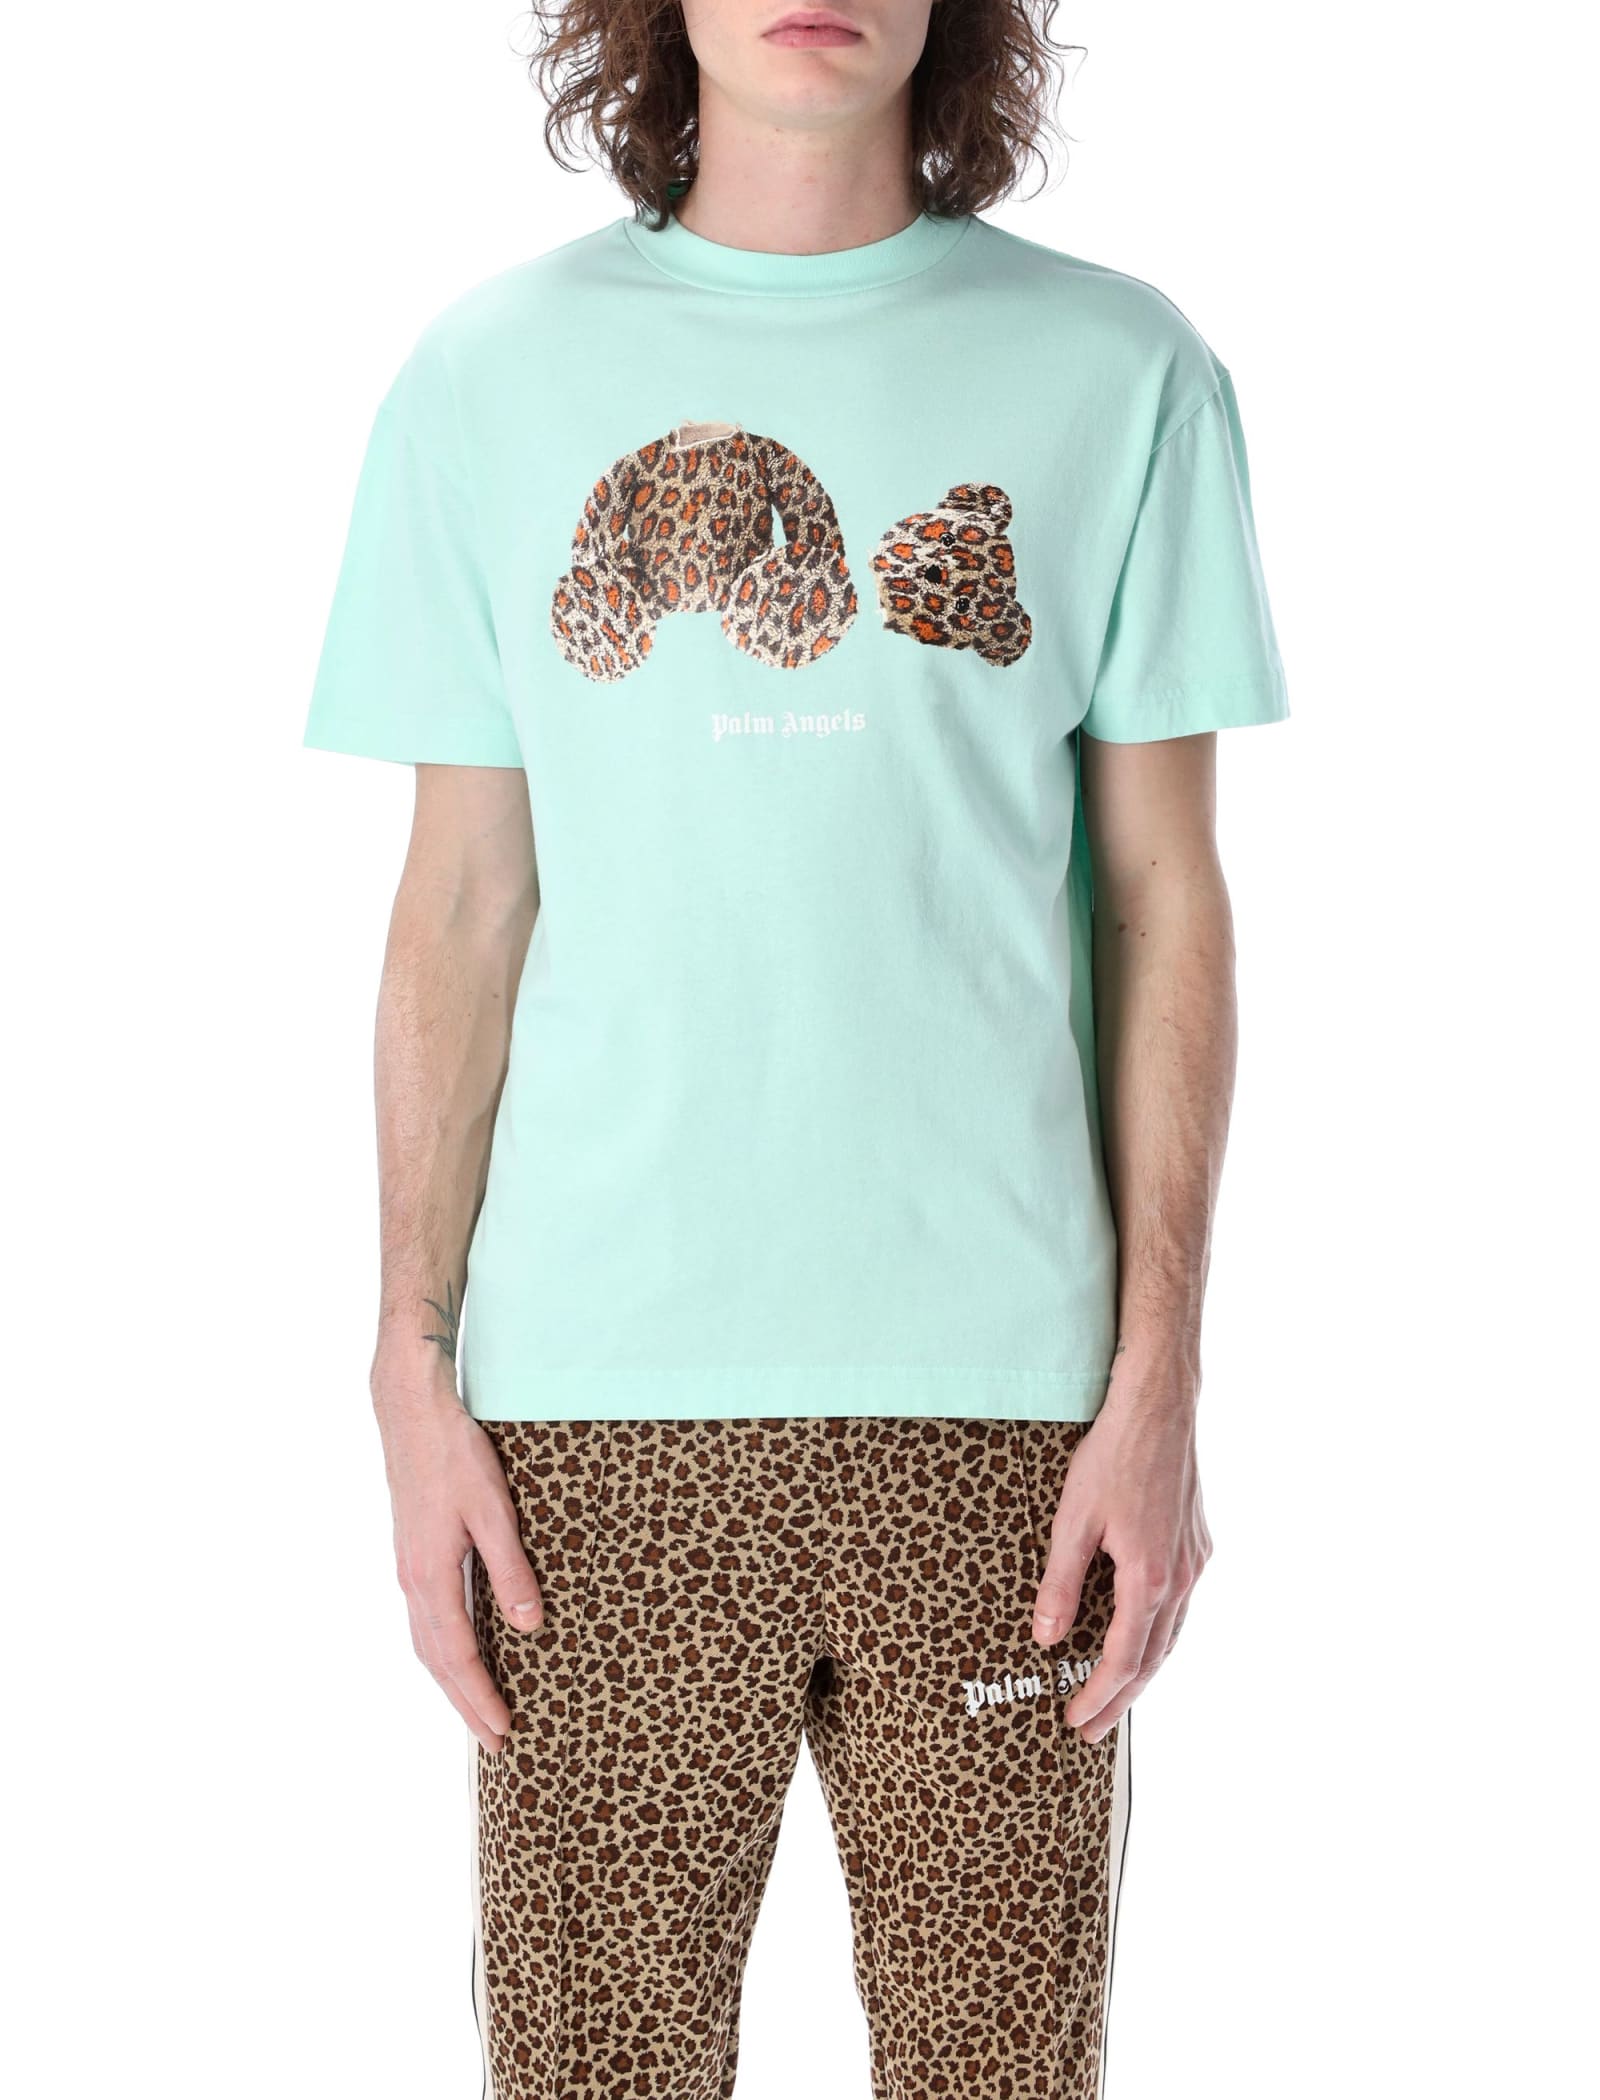 Palm Angels Leopard Bear T-shirt